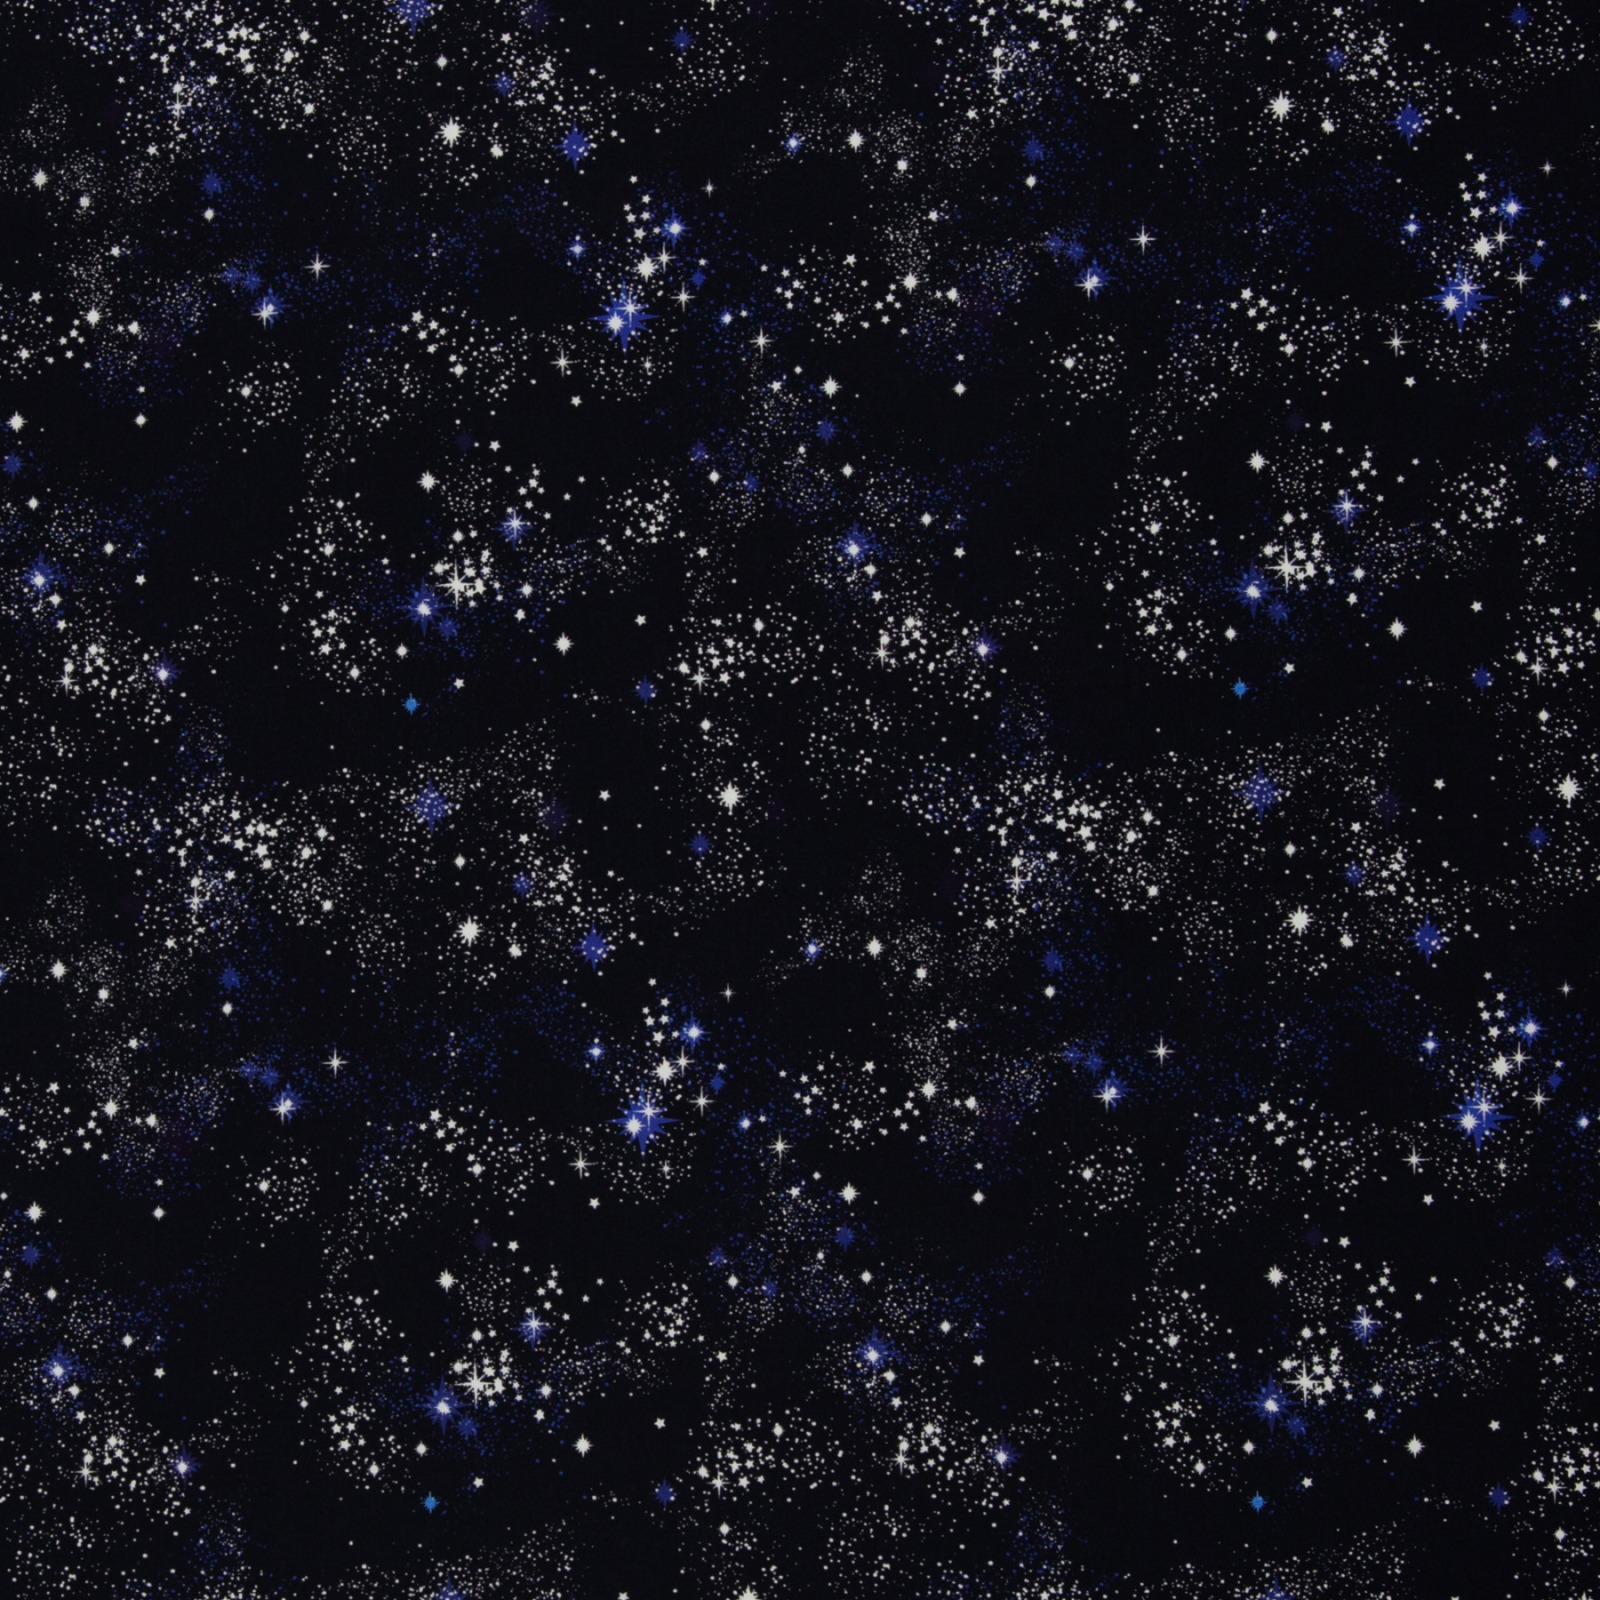 Baumwolle Sternenhimmel kleine Sterne Swafing Tinholt Weltall Galaxie 2